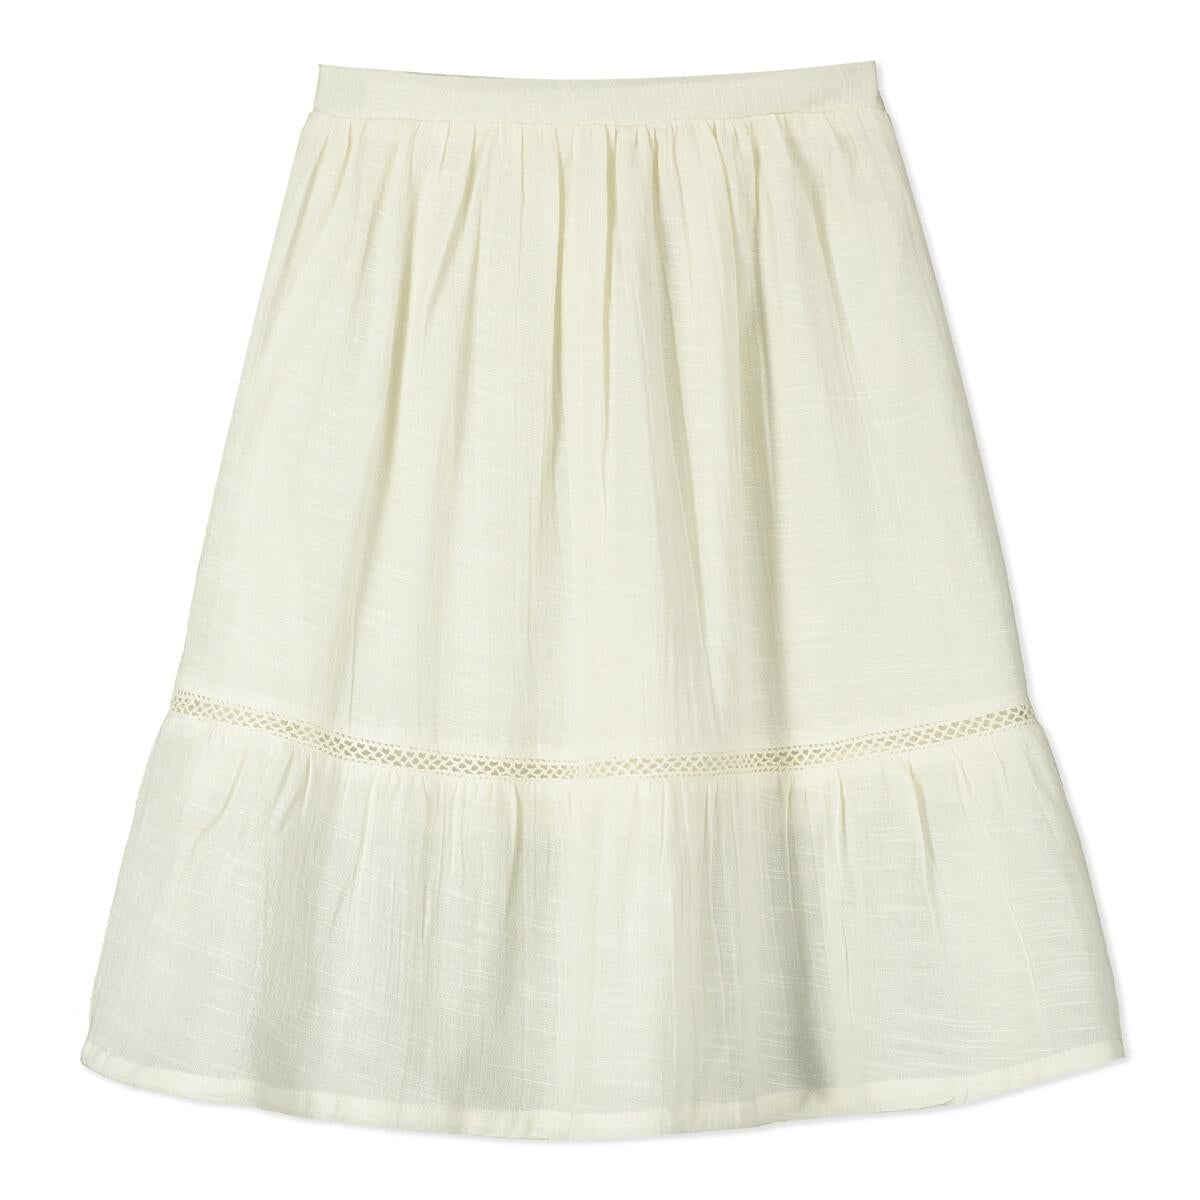 Jodhpur Cream Woven Skirt - Twinkle Twinkle Little One